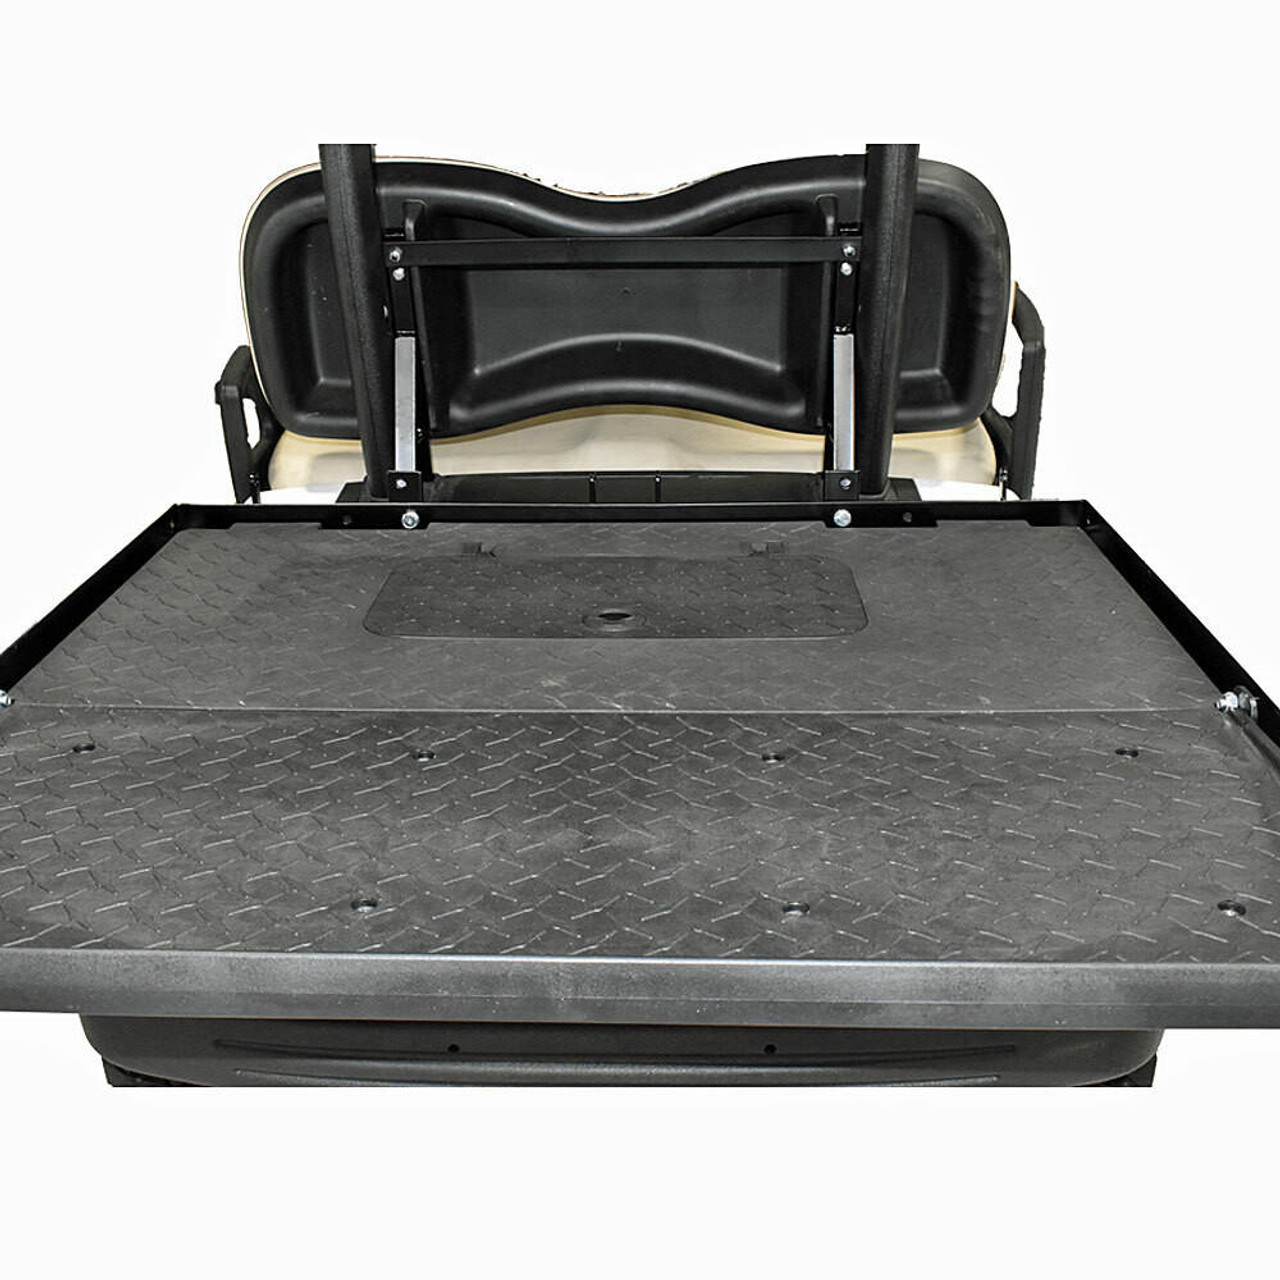  GTW MACH3 Rear Flip Seat (Black Cushions) - Fits Club Car Precedent, Tempo, Onward 